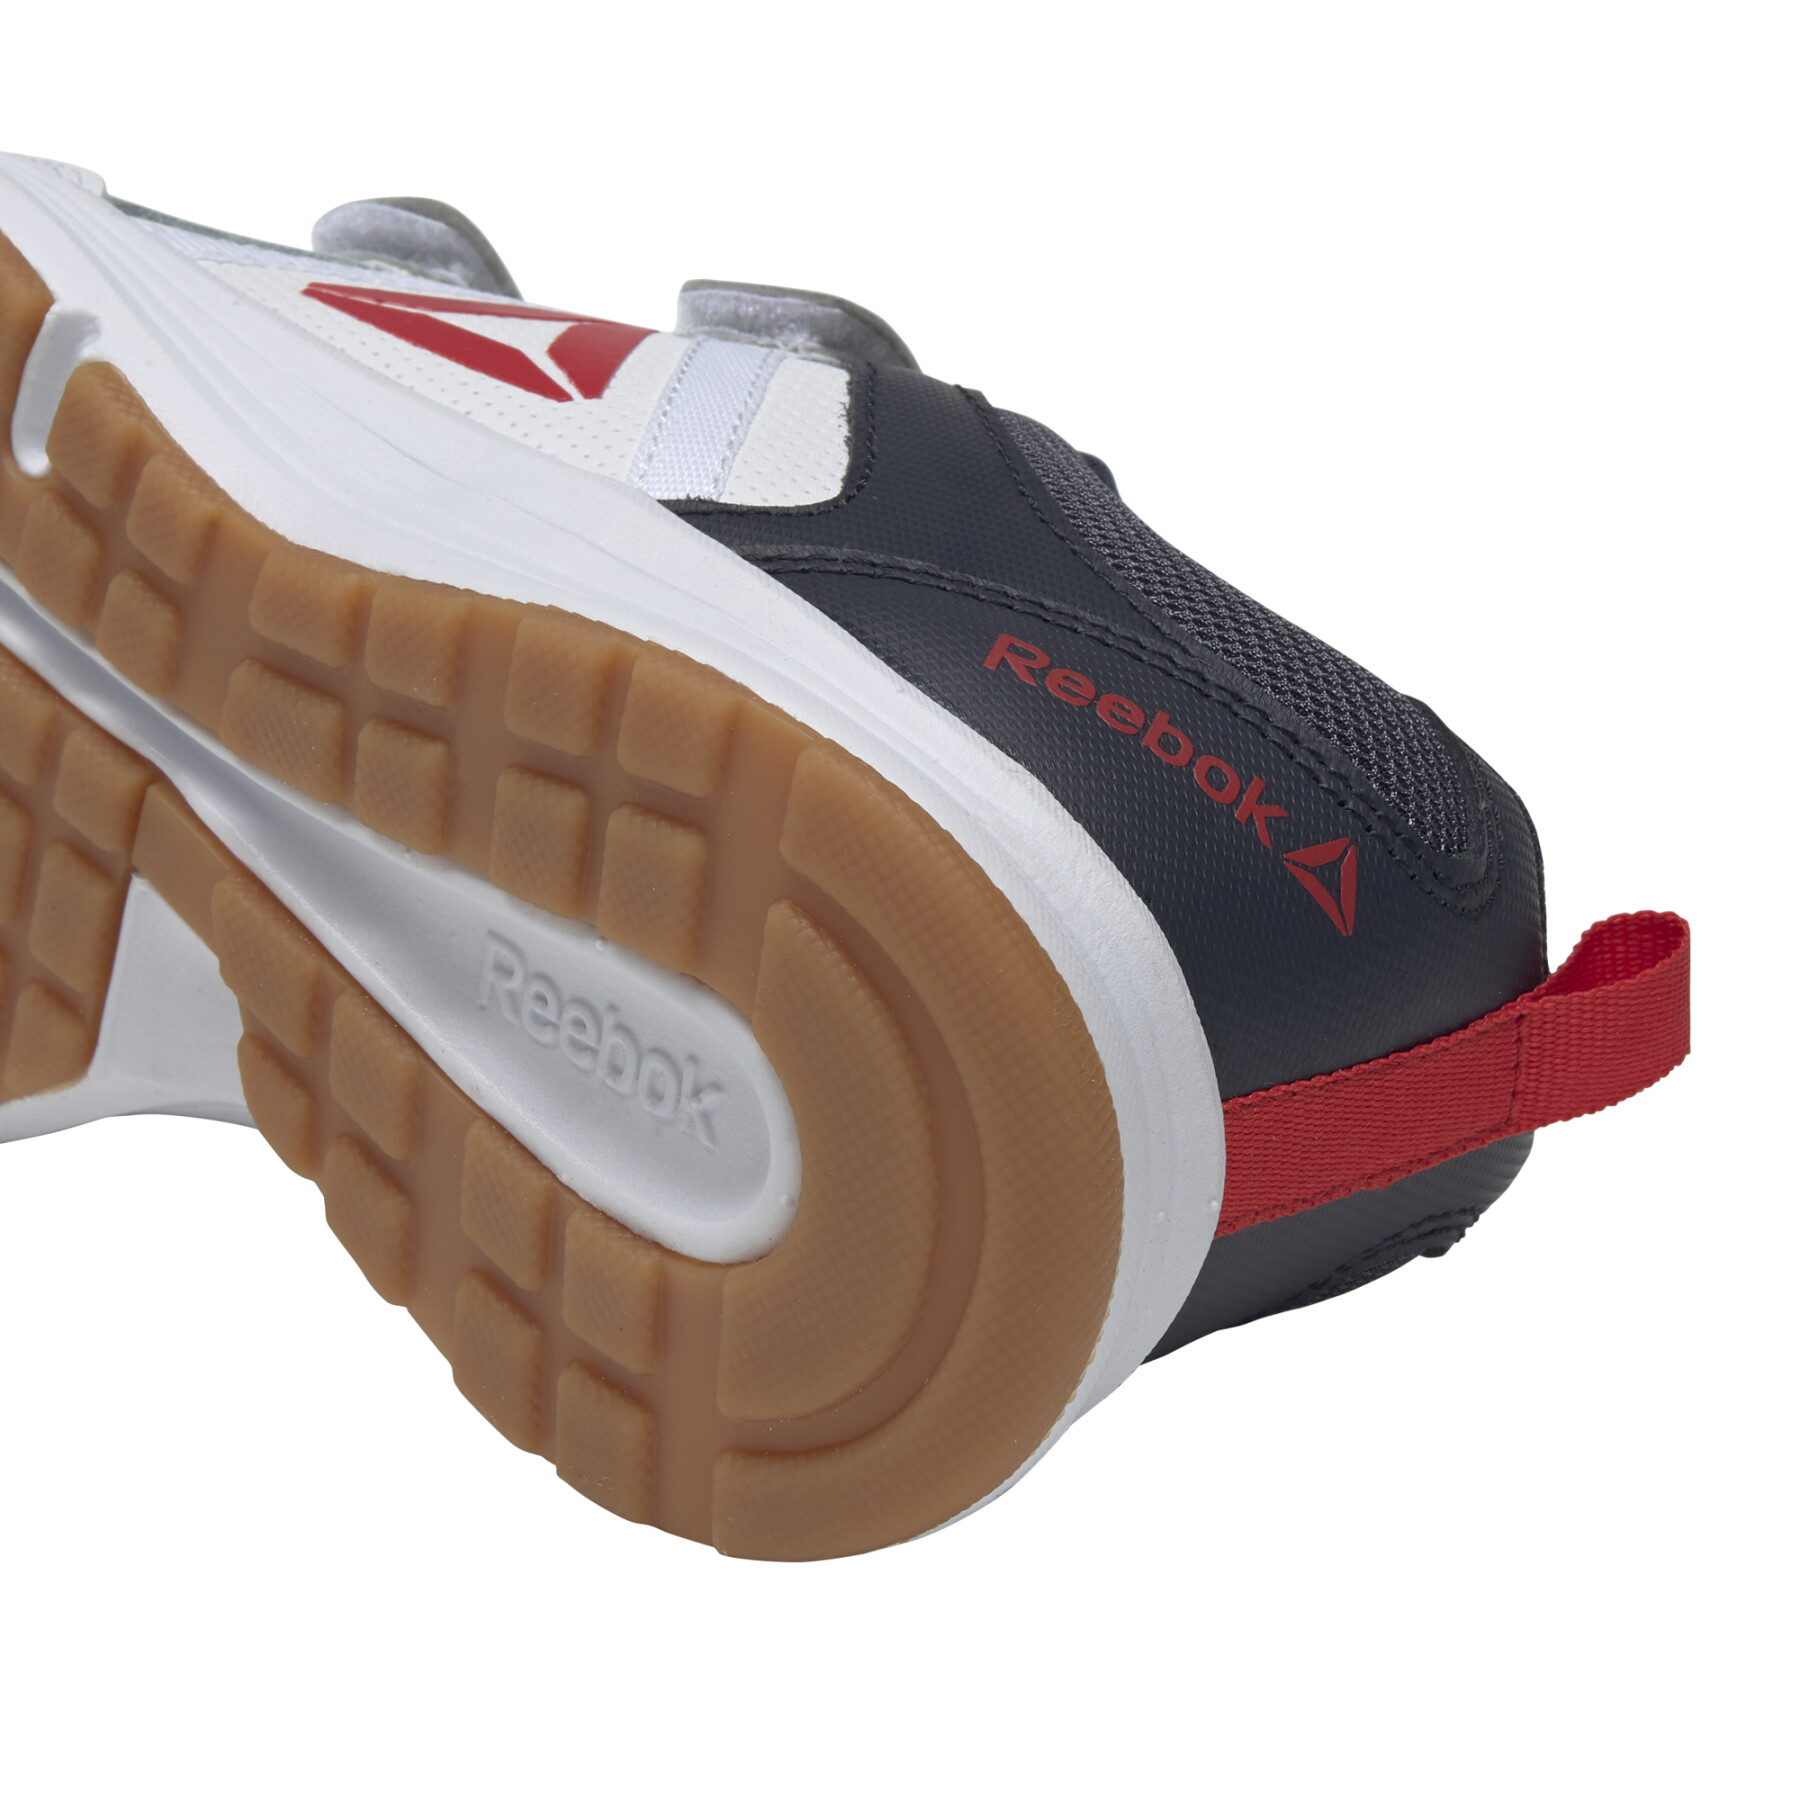 Zapatos para niños Reebok Almotio 4.0